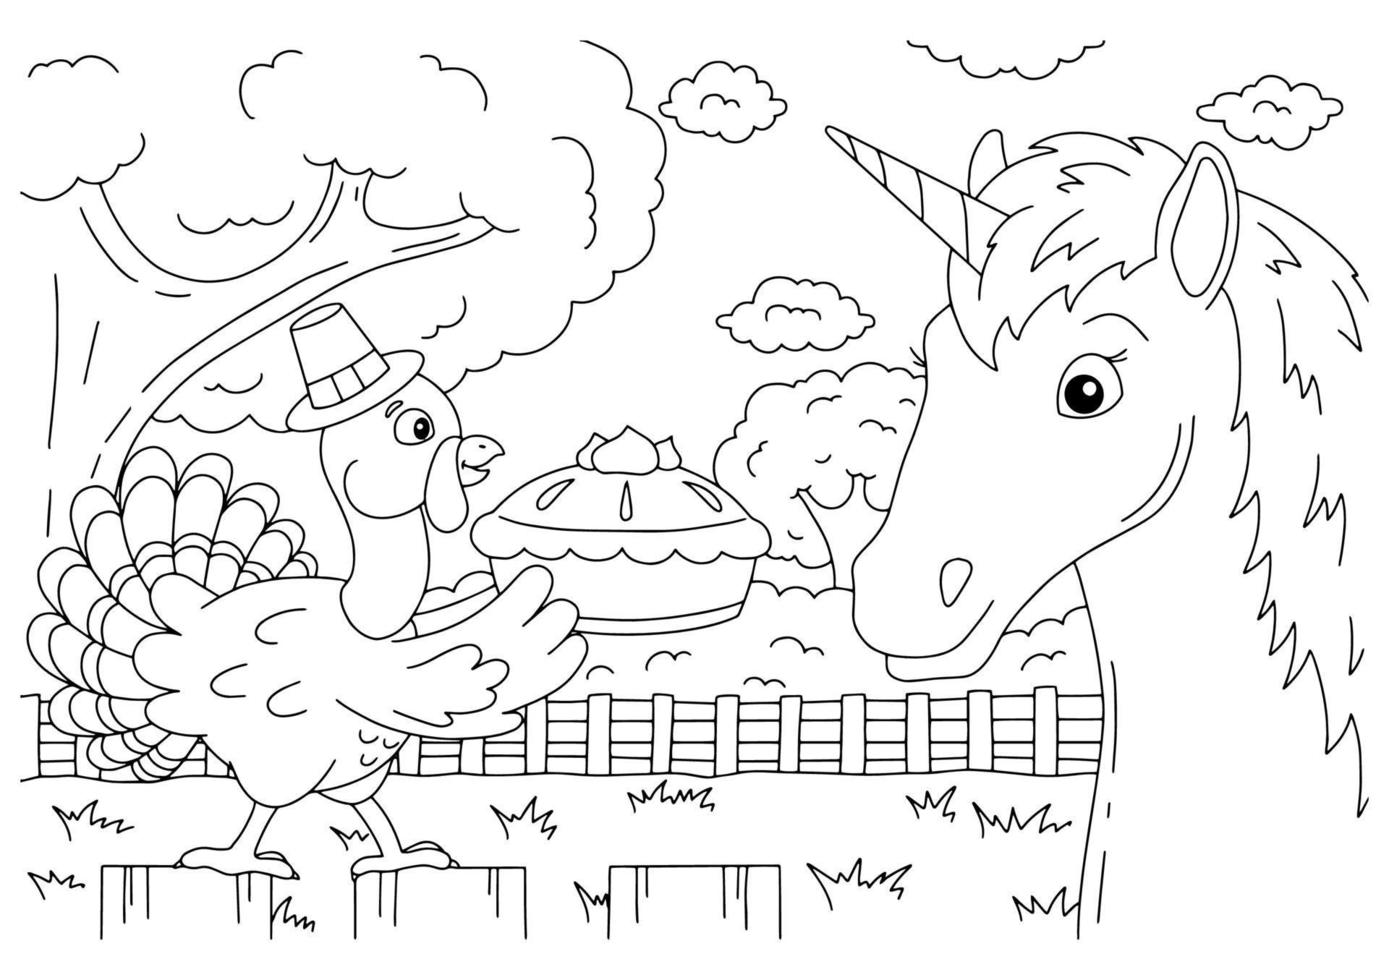 un tacchino di fattoria porta una torta di zucca. carino unicorno. cavallo magico fata. pagina del libro da colorare per bambini. giorno del Ringraziamento. stile cartone animato. illustrazione vettoriale isolato su sfondo bianco.